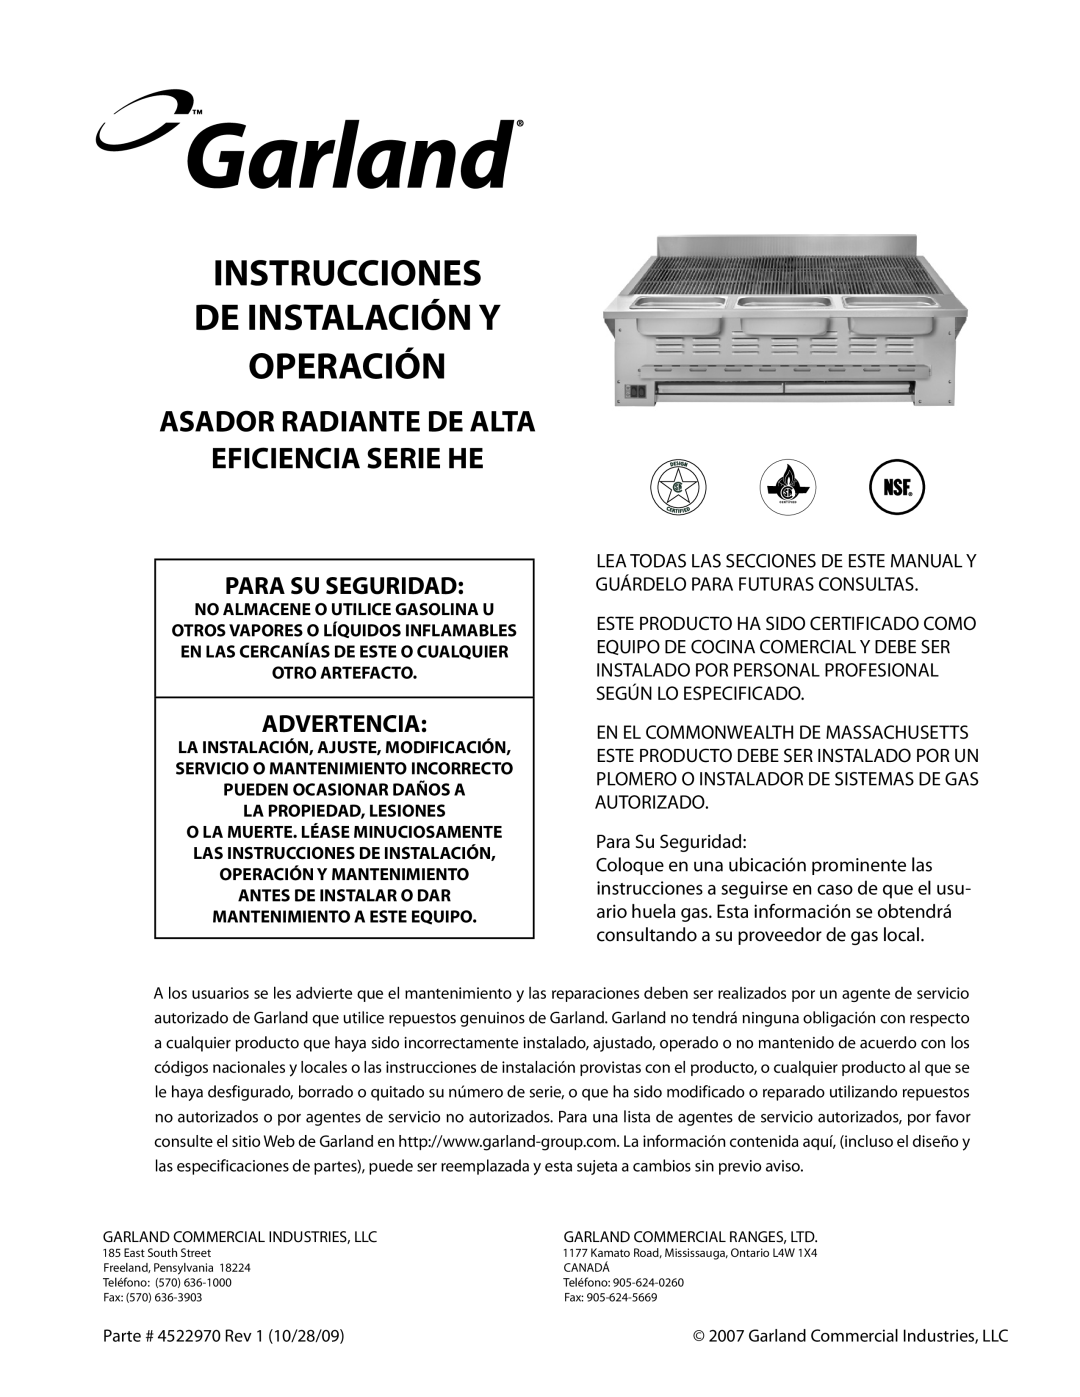 Garland 4522970 REV 1 Para Su Seguridad, Advertencia, Instrucciones De Instalación Y Operación, Eficiencia Serie He 